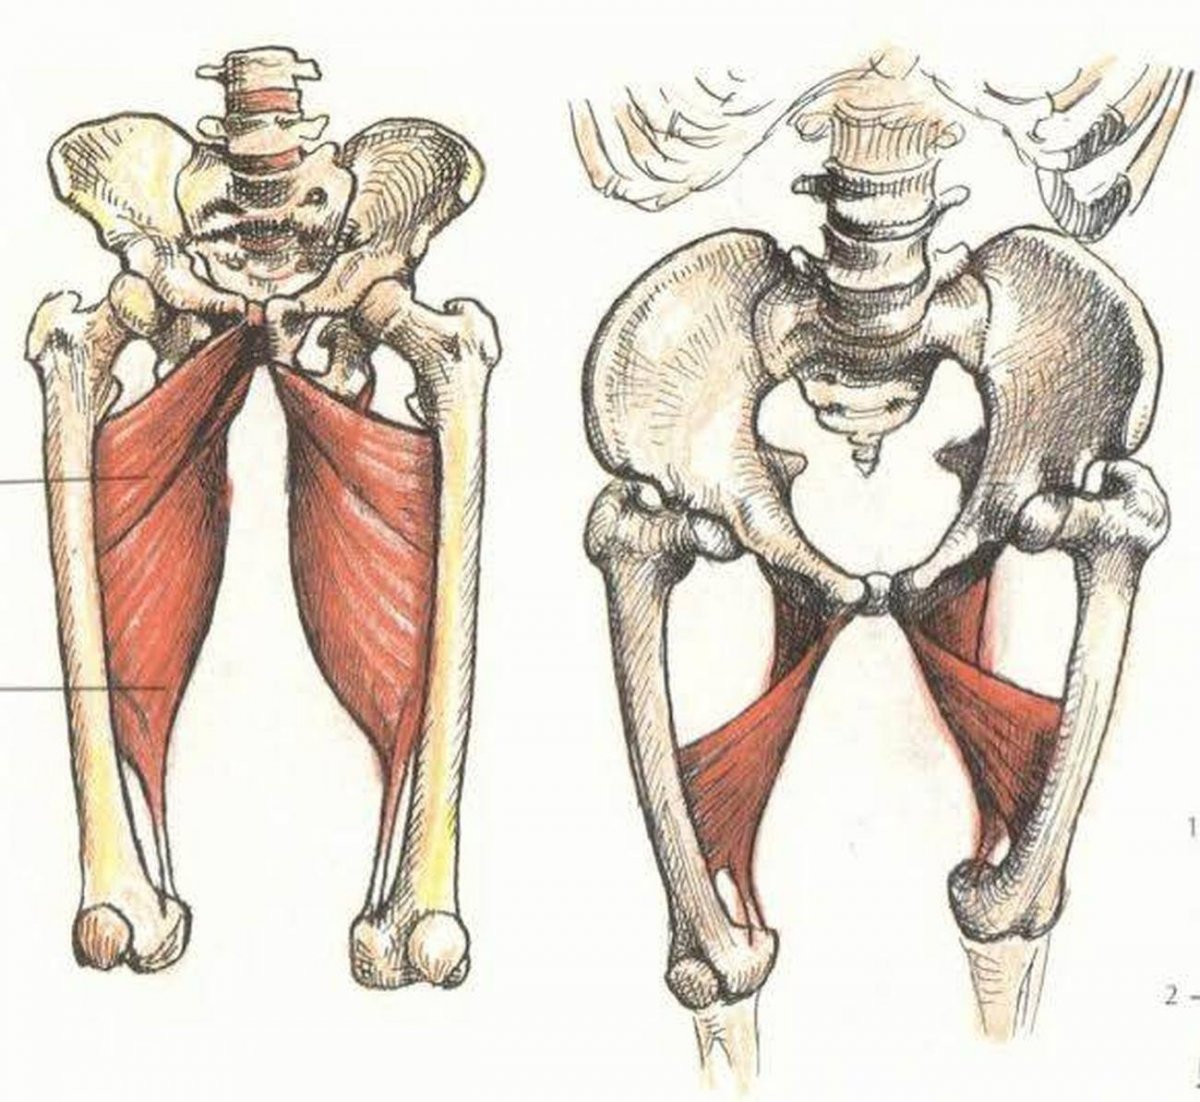 Мышцы ног анатомия